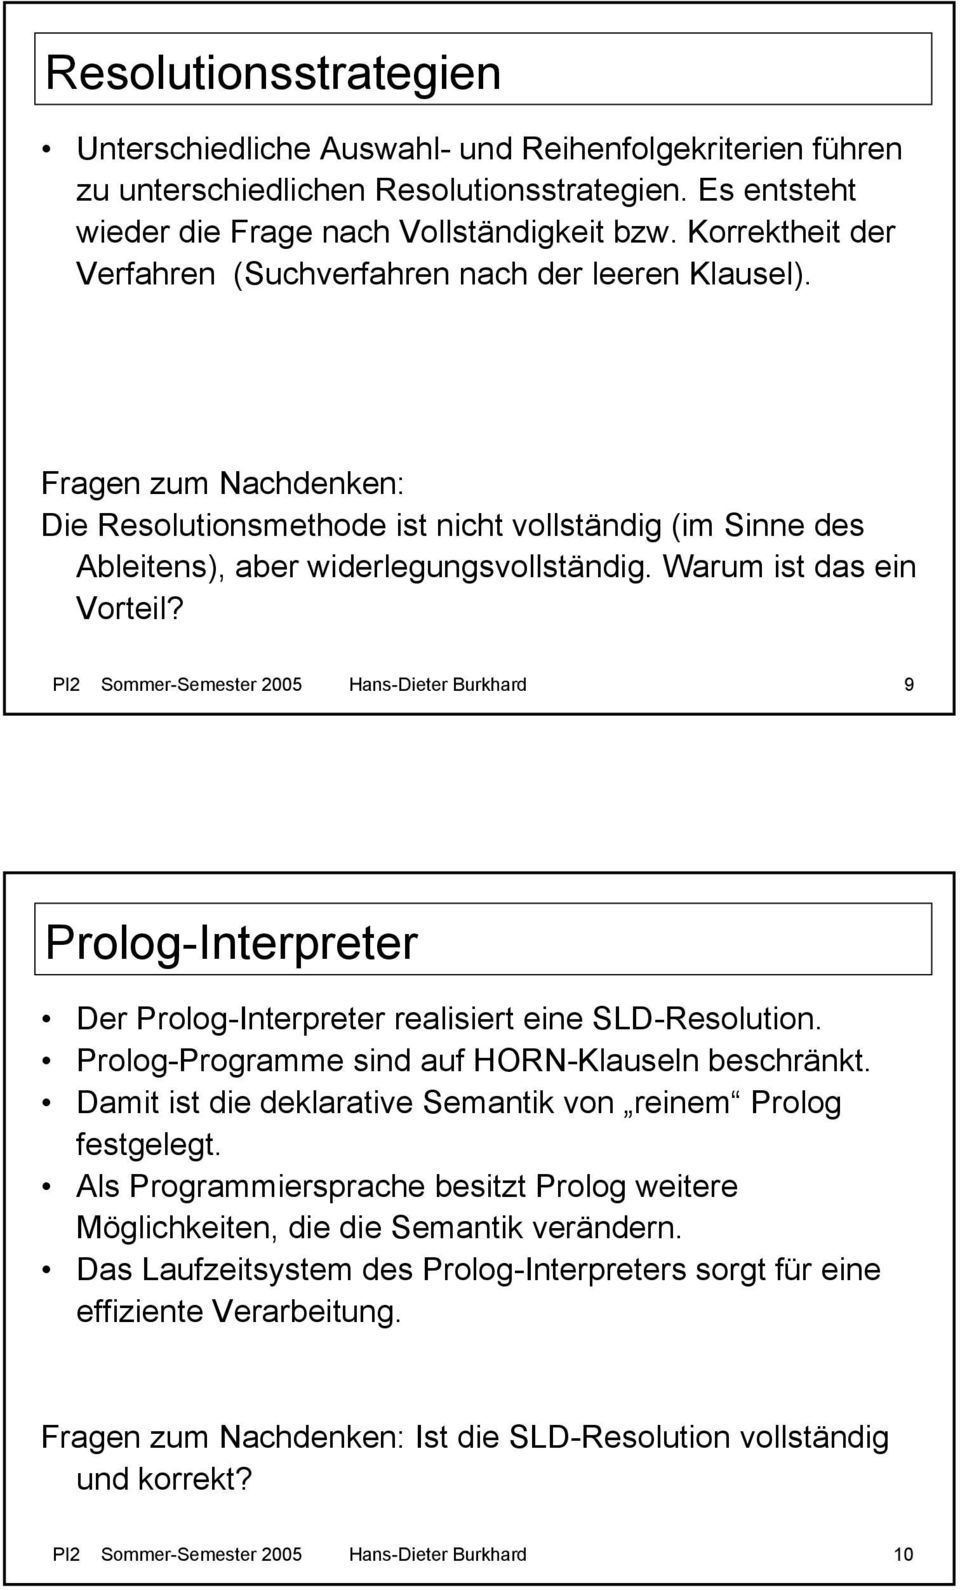 Warum ist das ein Vorteil? PI2 Sommer-Semester 2005 Hans-Dieter Burkhard 9 Prolog-Interpreter Der Prolog-Interpreter realisiert eine SLD-Resolution. Prolog-Programme sind auf HORN-Klauseln beschränkt.